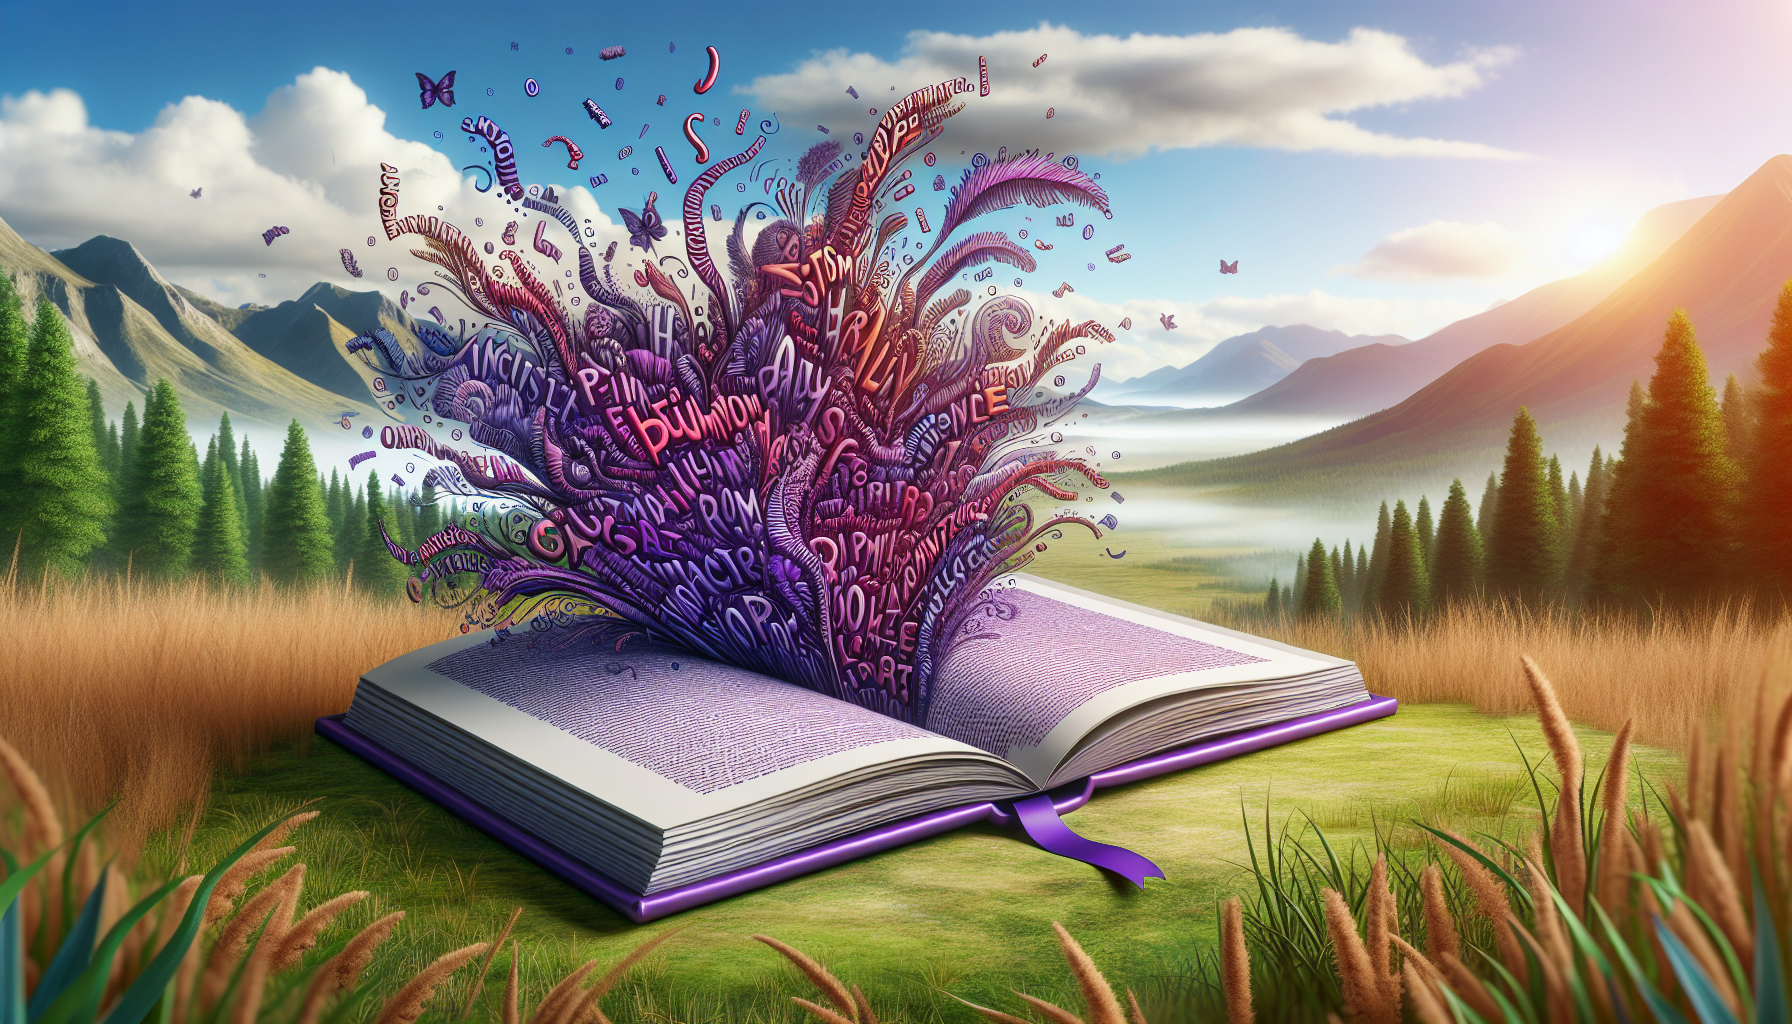 livre theme violet ouvert mots animes decoratifs contraste fond realiste nature herbe arbres montagnes ciel semi nuageux.jpeg